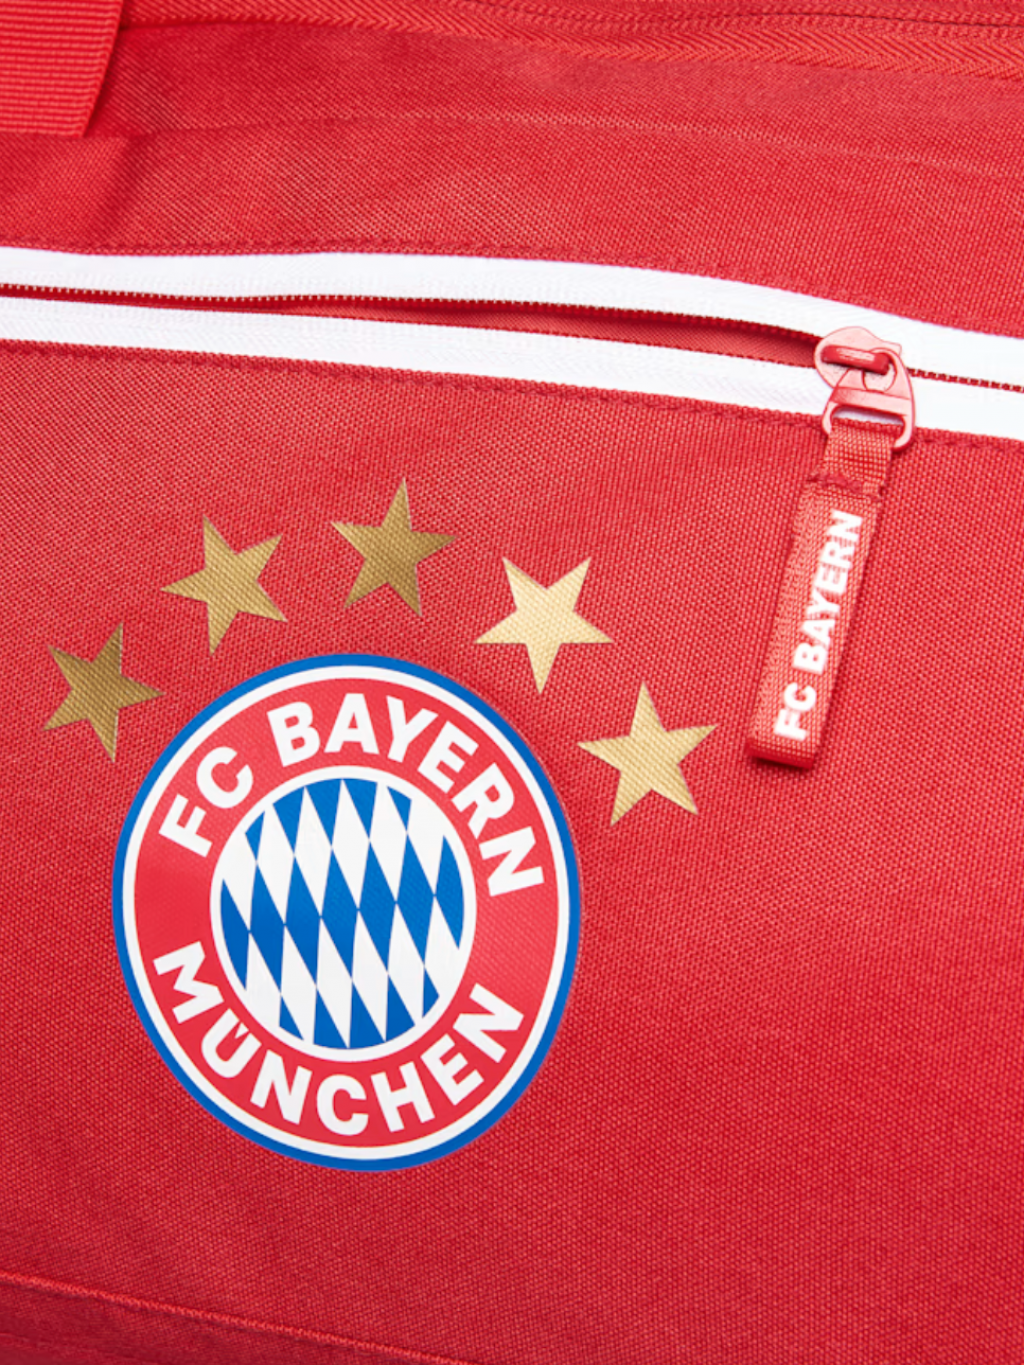 Sportovní taška malá FC Bayern München, červená